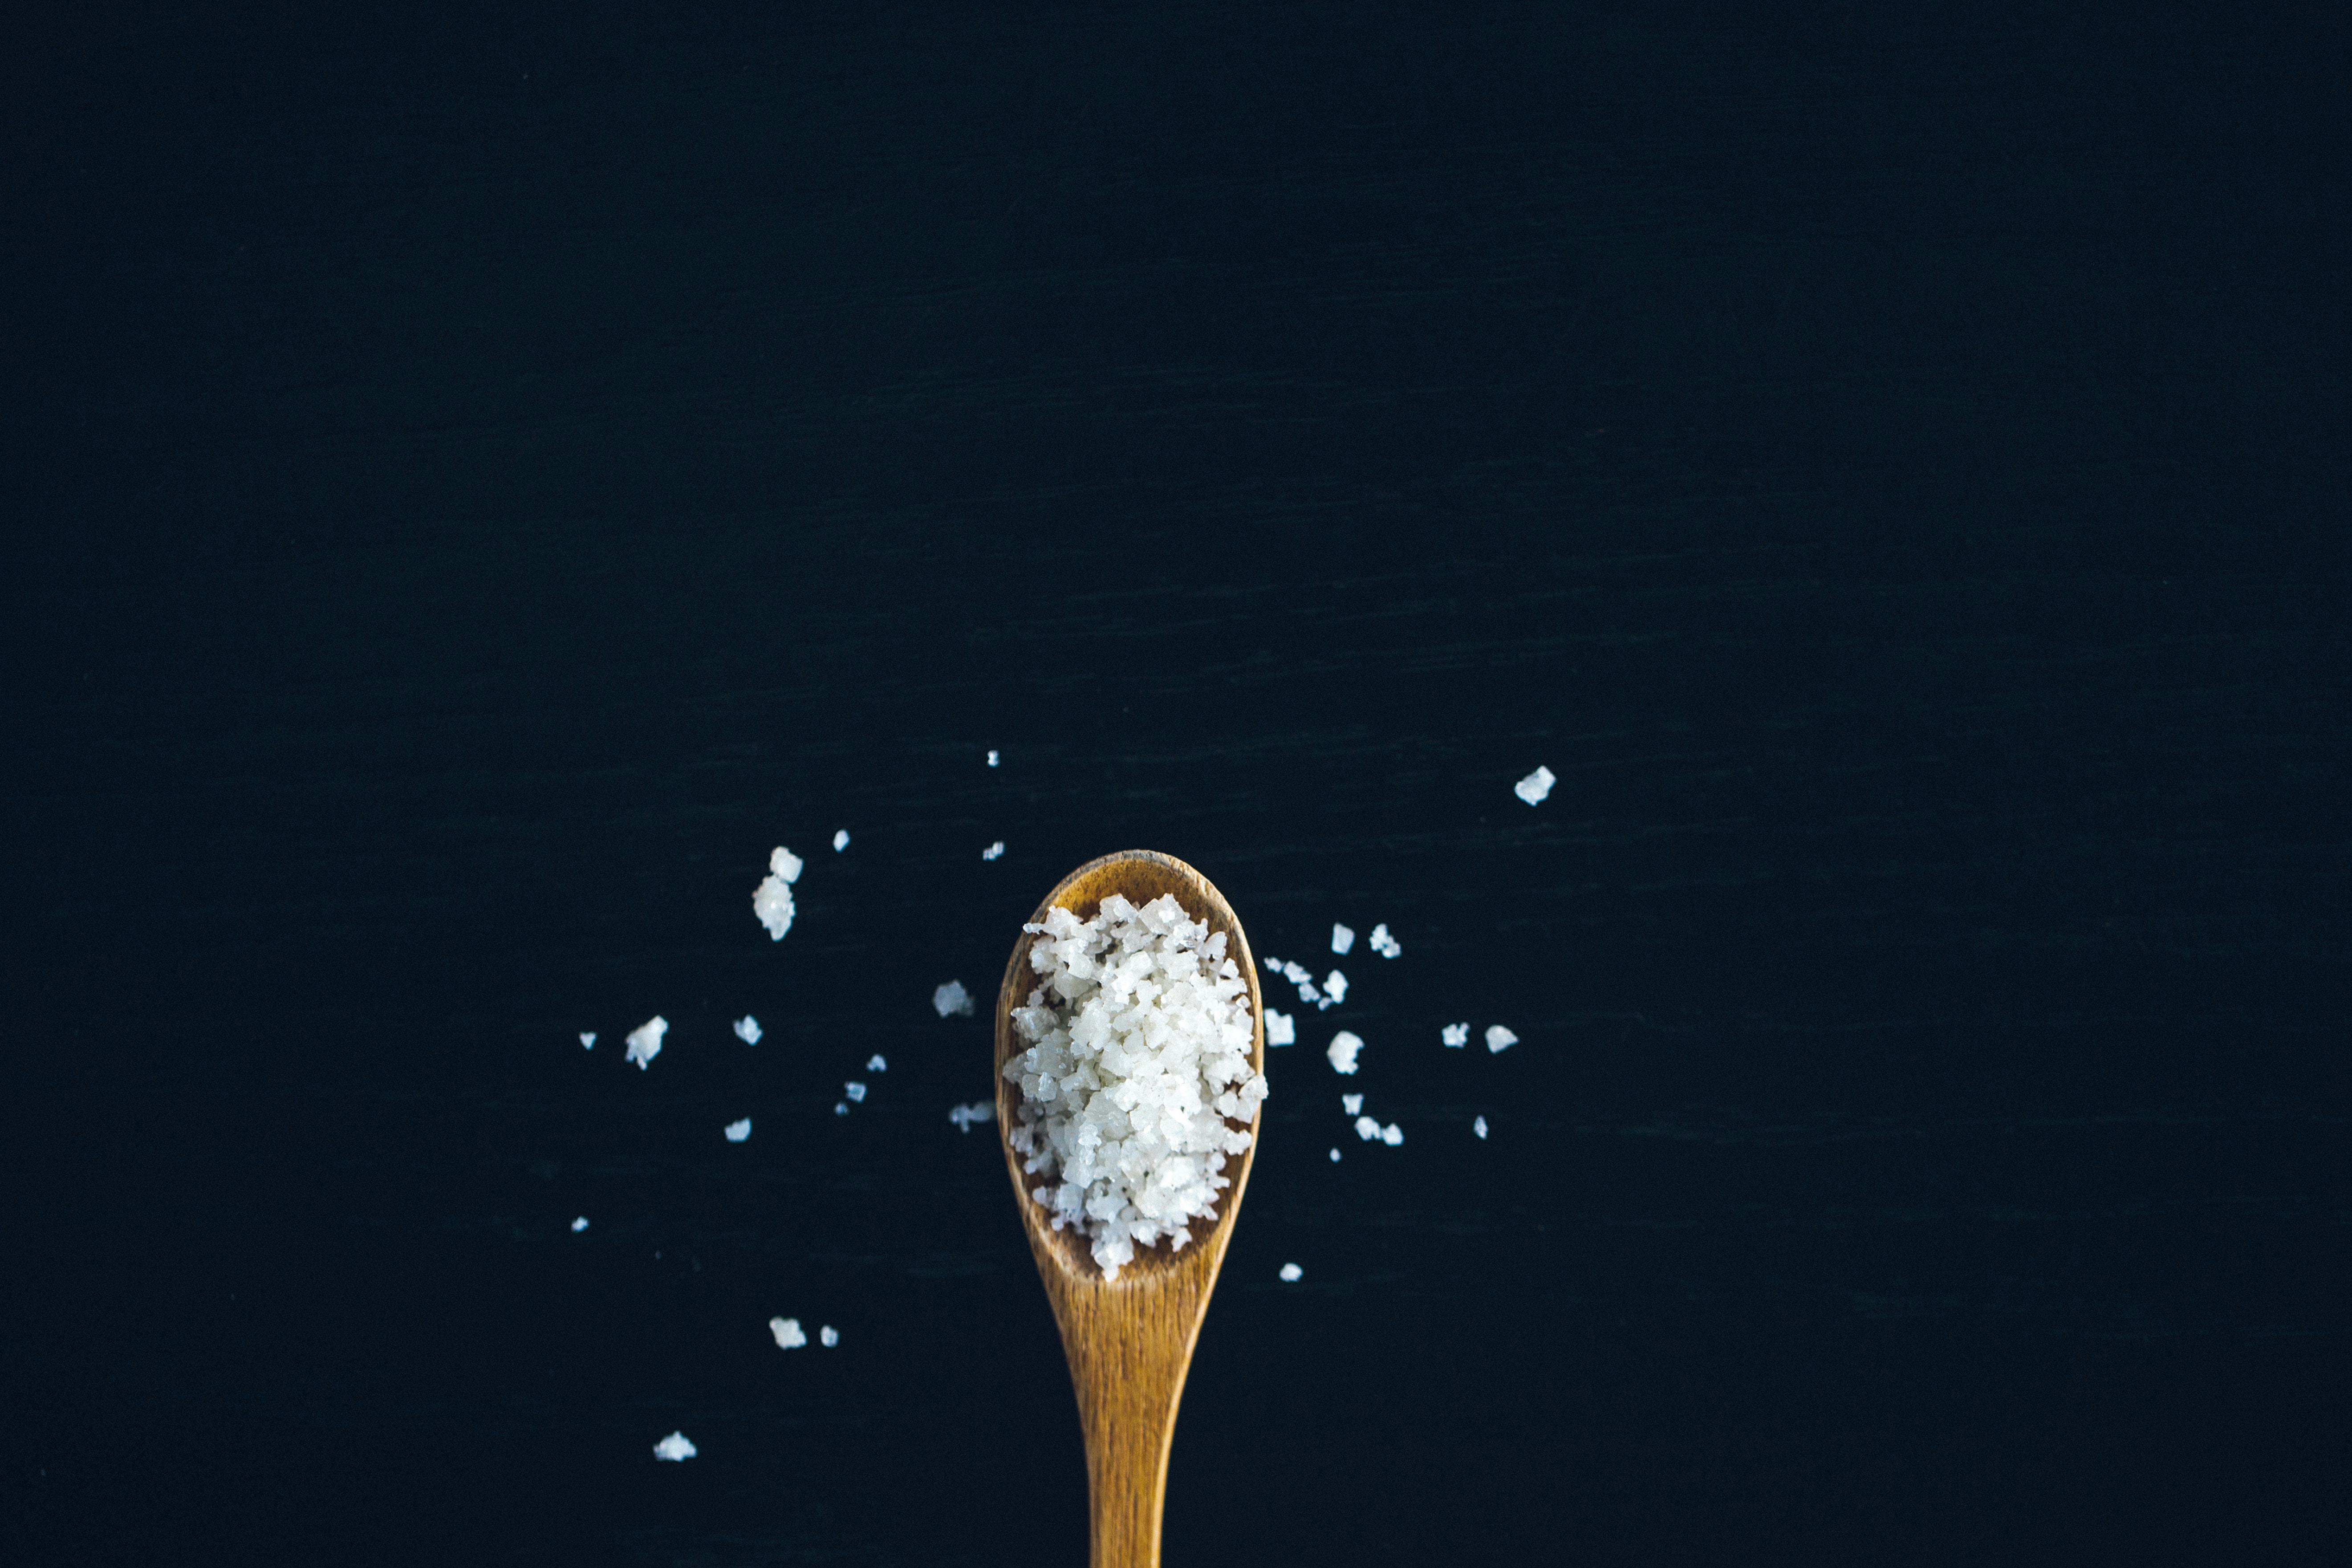 Salt in wooden spoon